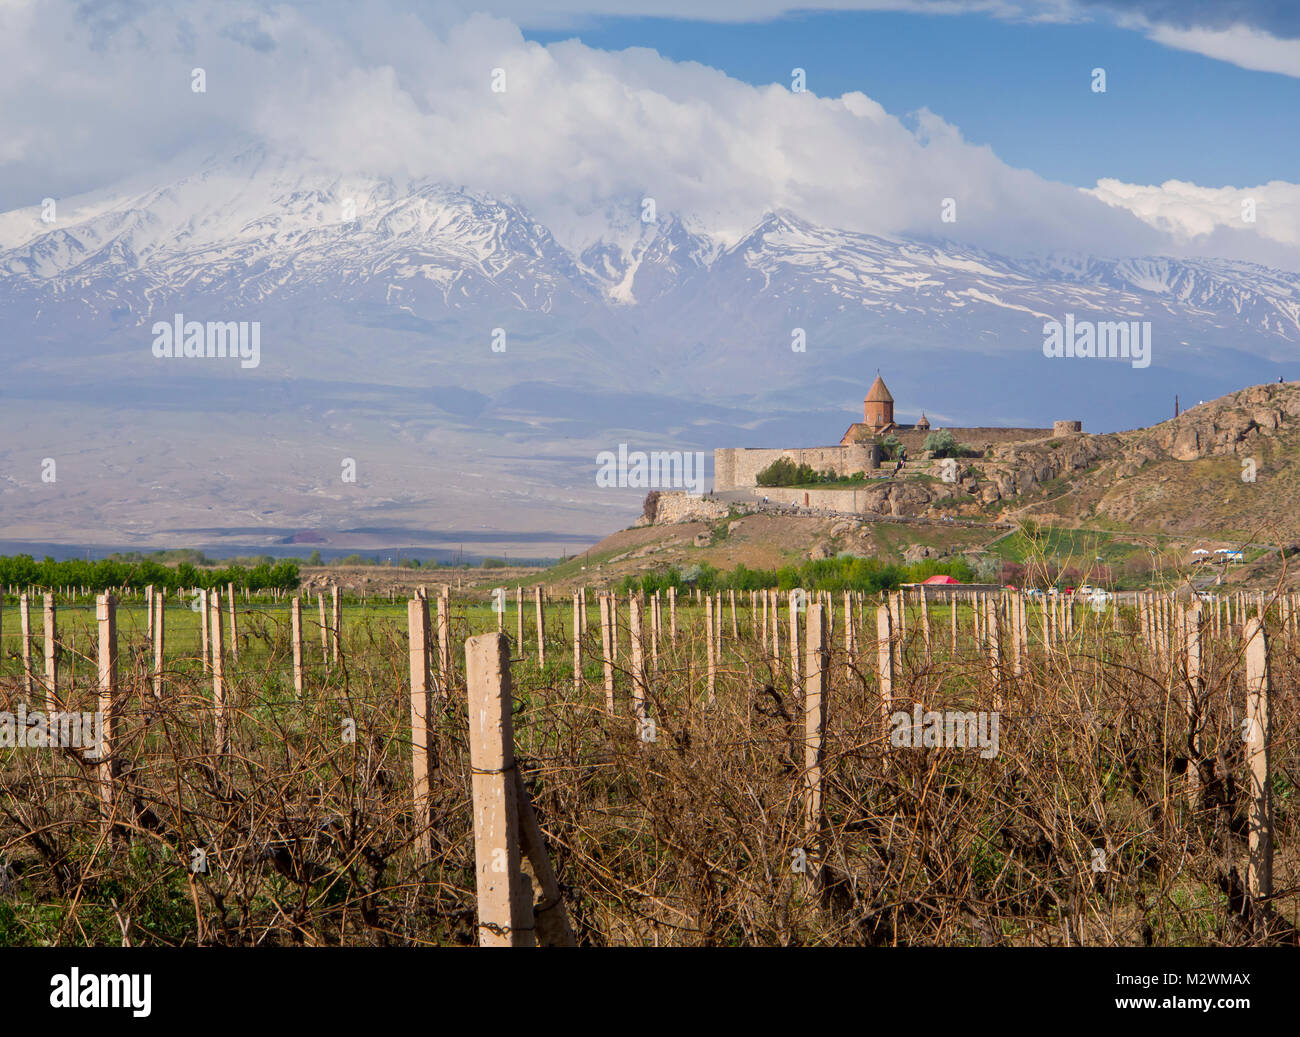 Le monastère de Khor Virap en Arménie et de vignobles, Ararat, montagne derrière, une destination touristique populaire et pittoresque à la frontière turque Banque D'Images